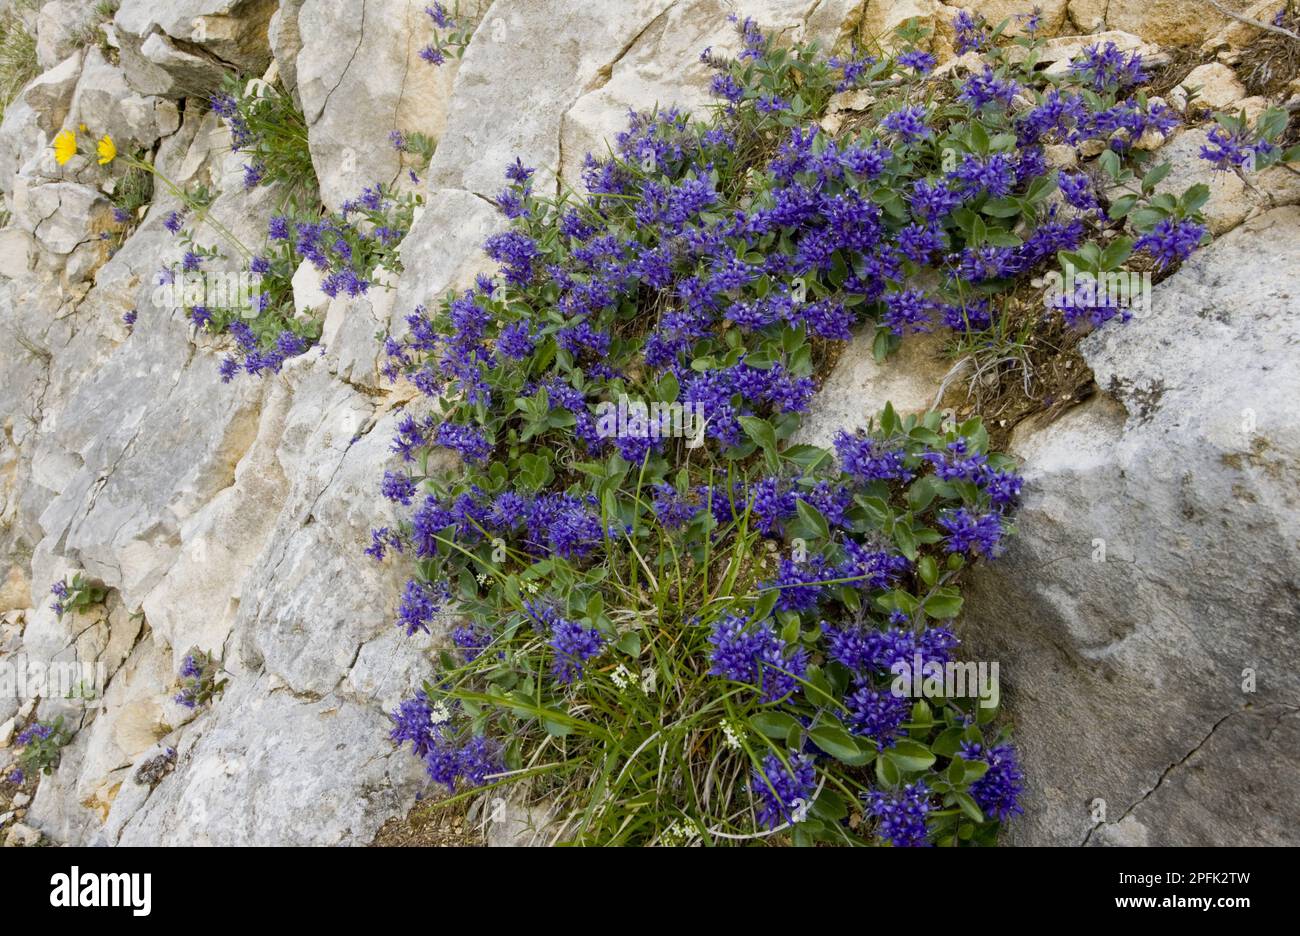 Blaues Maenderle, blue almond alder (Paederota bonarota), Blaue Maenderle, Wildes Mannderle, Wegerichgewaechse, Bluish Paederota flowering, growing Stock Photo